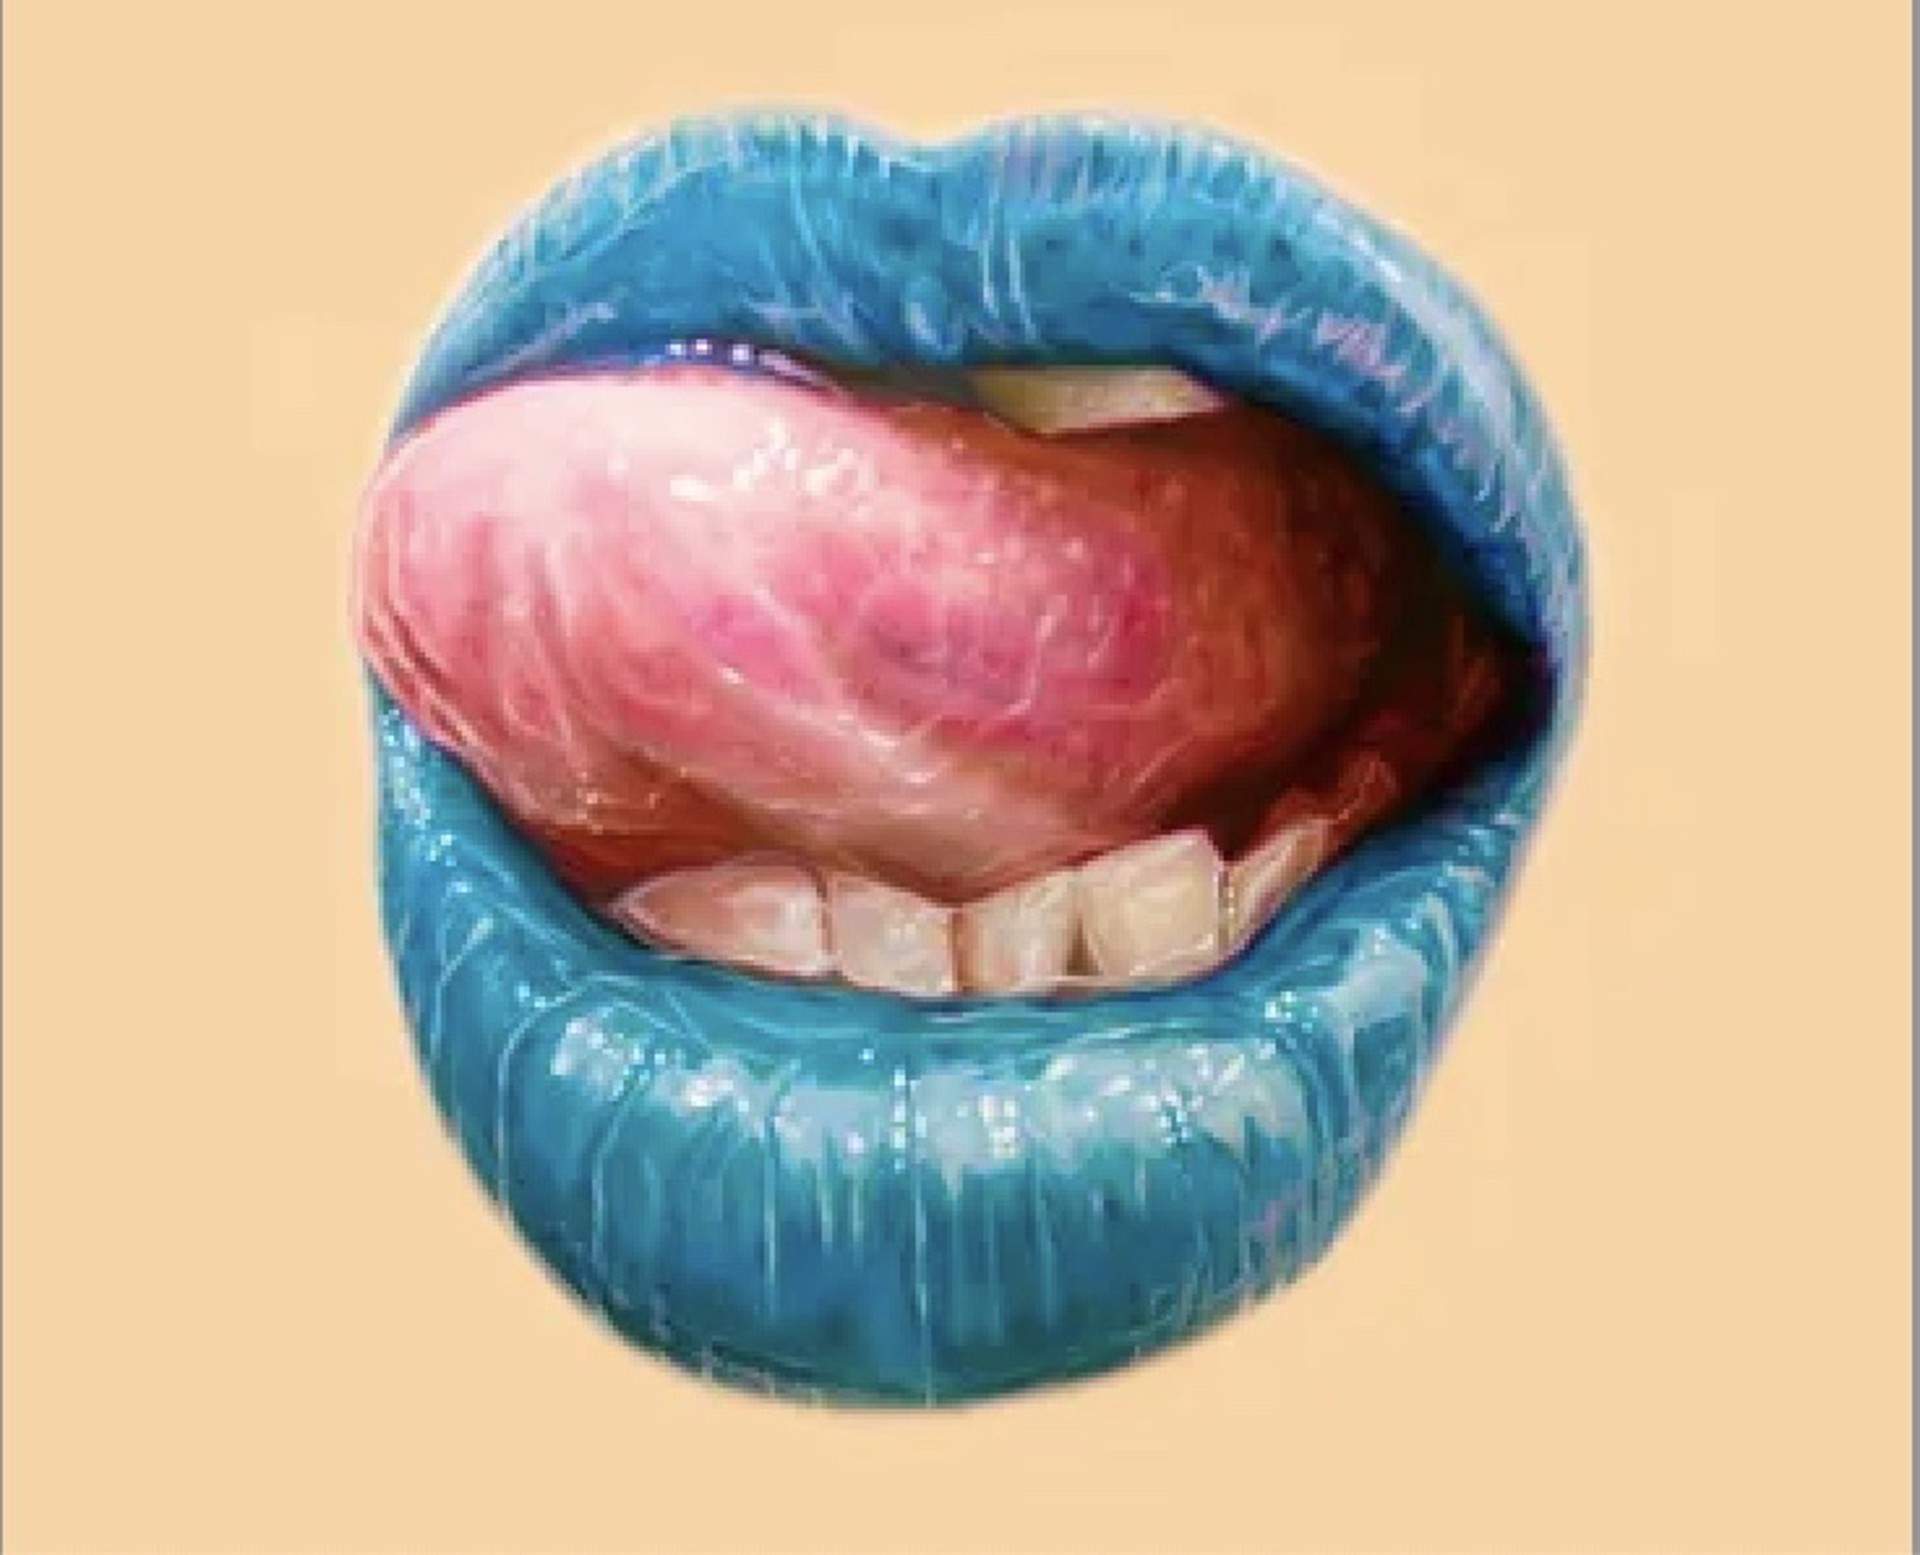 Untitled (Blue lips) by Elizabeth Winnel